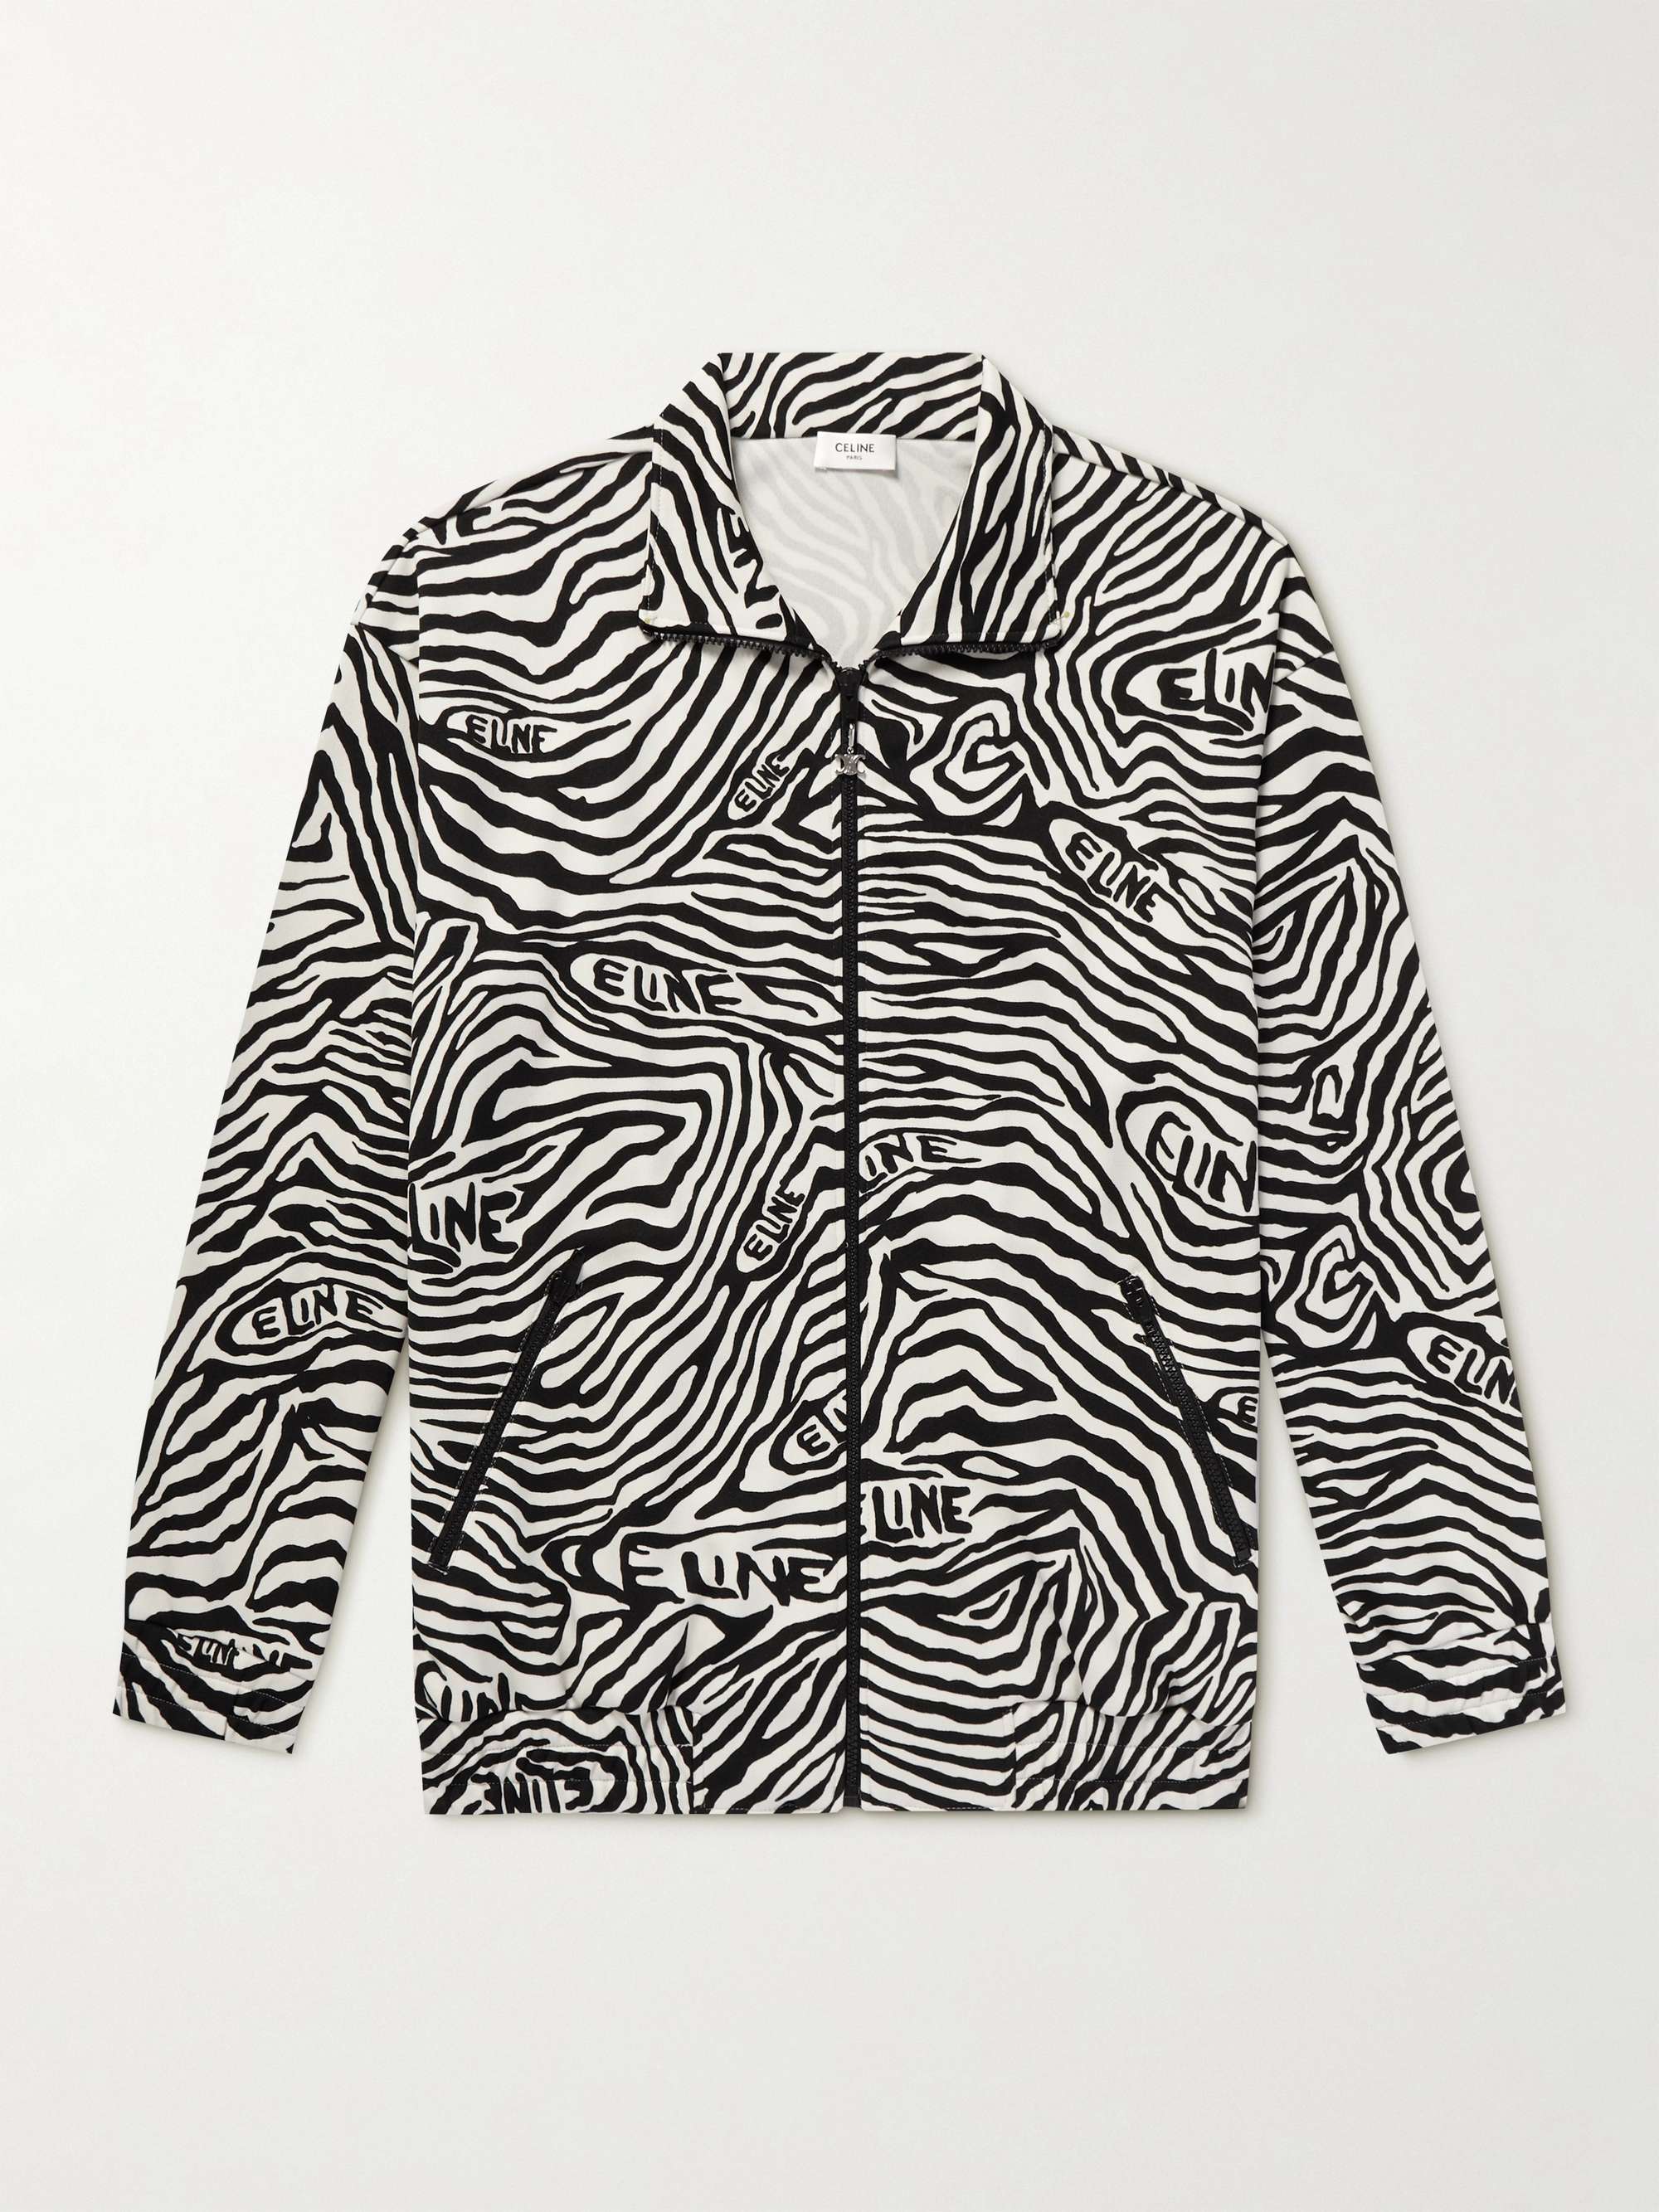 CELINE HOMME Zebra-Print Jersey Zip-Up Sweatshirt | MR PORTER